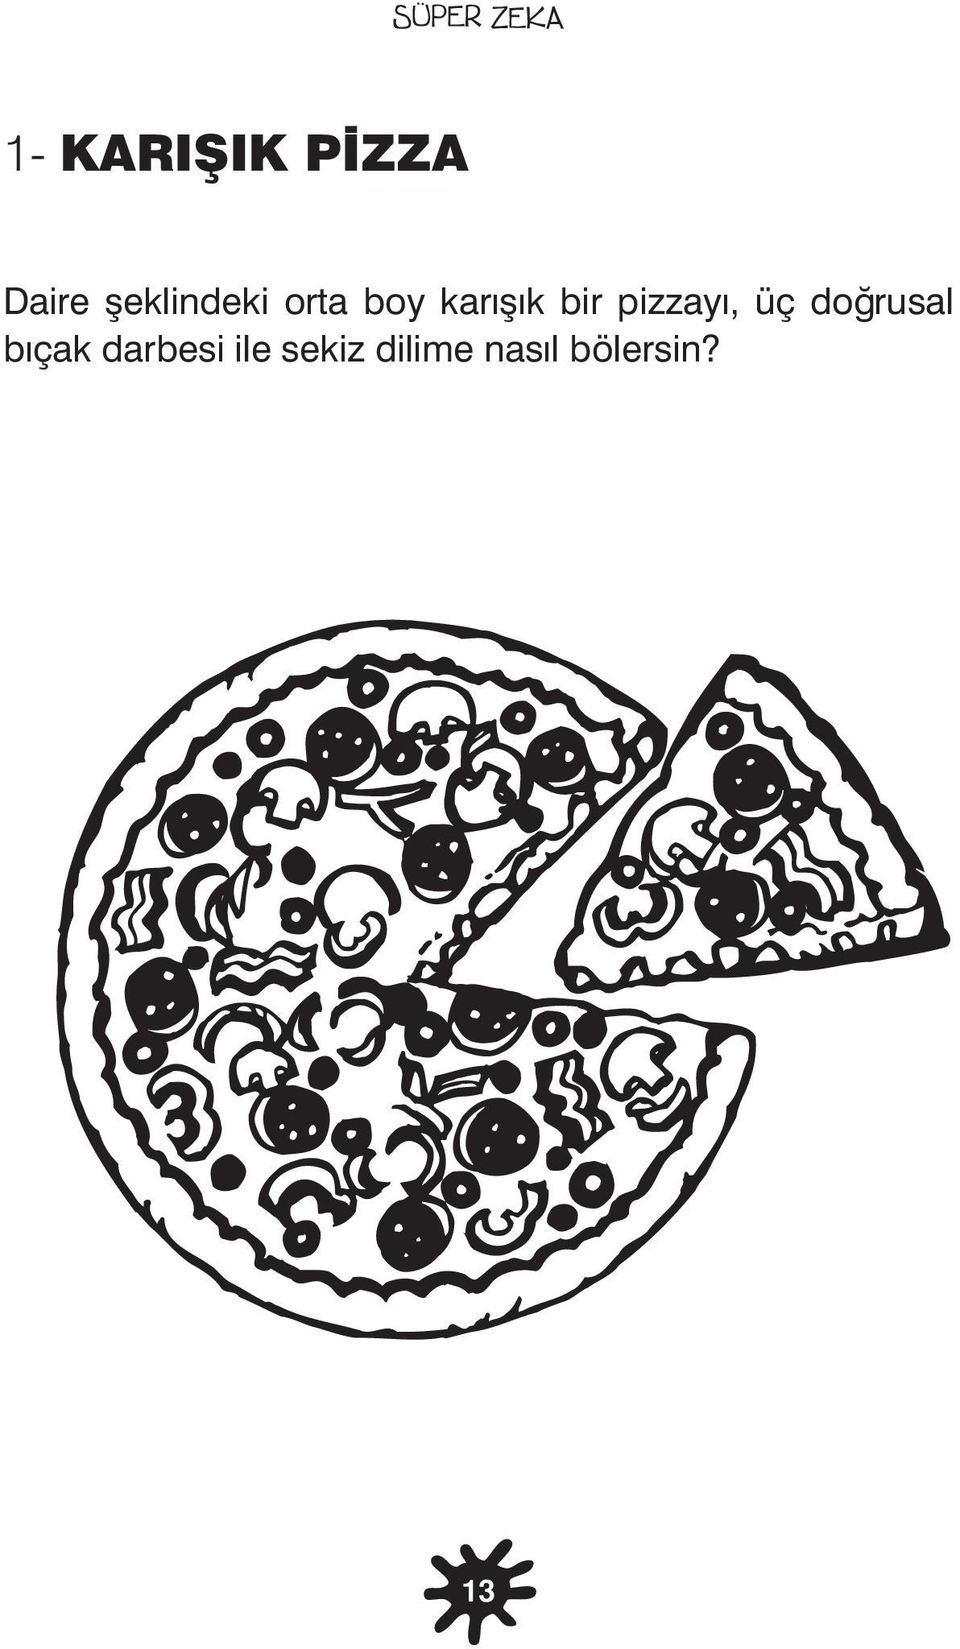 pizzayı, üç doğrusal bıçak